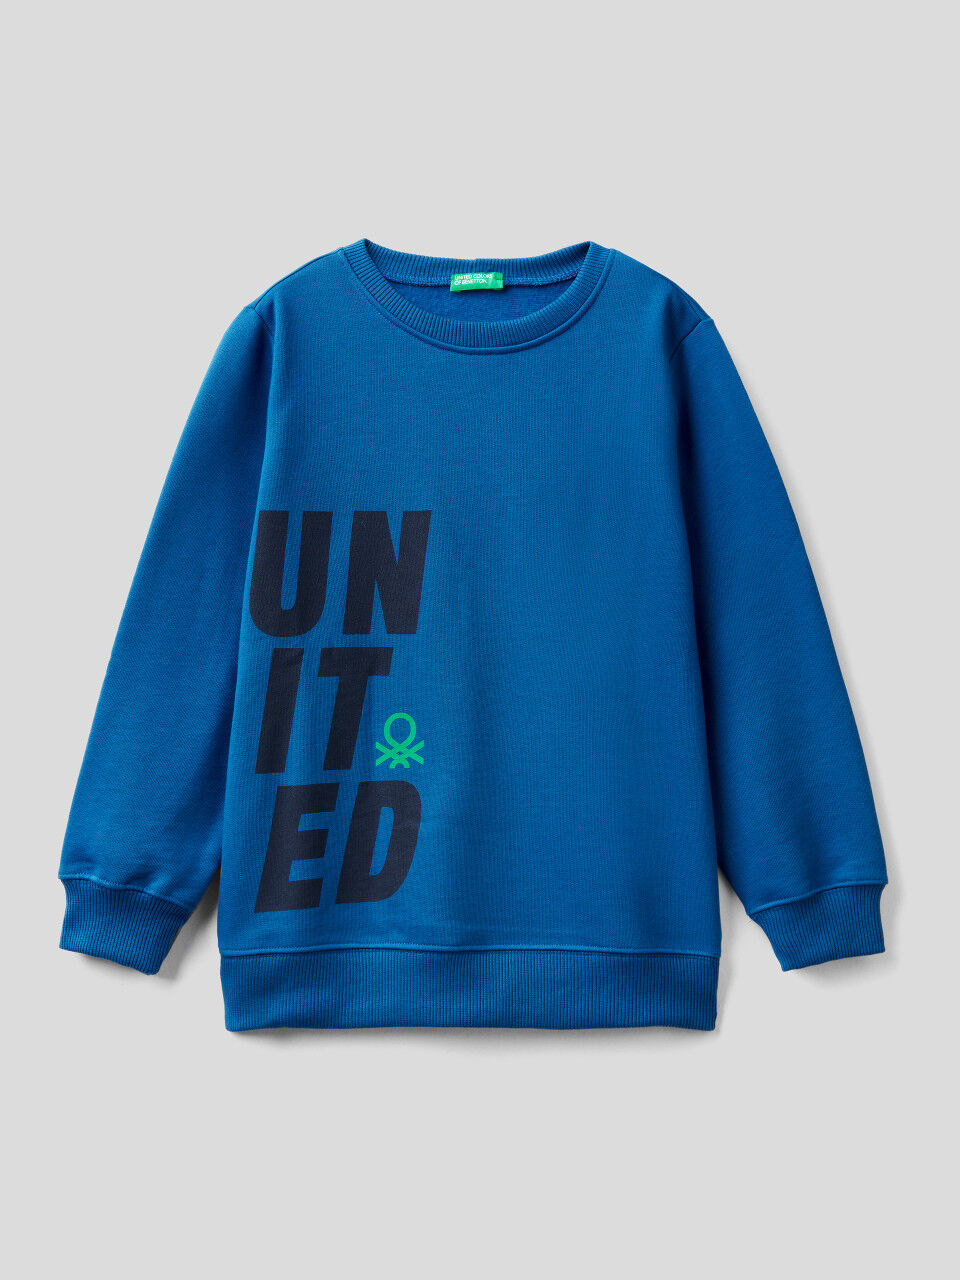 United Colors of Benetton Boys Maglia G/C M/L Sweater 